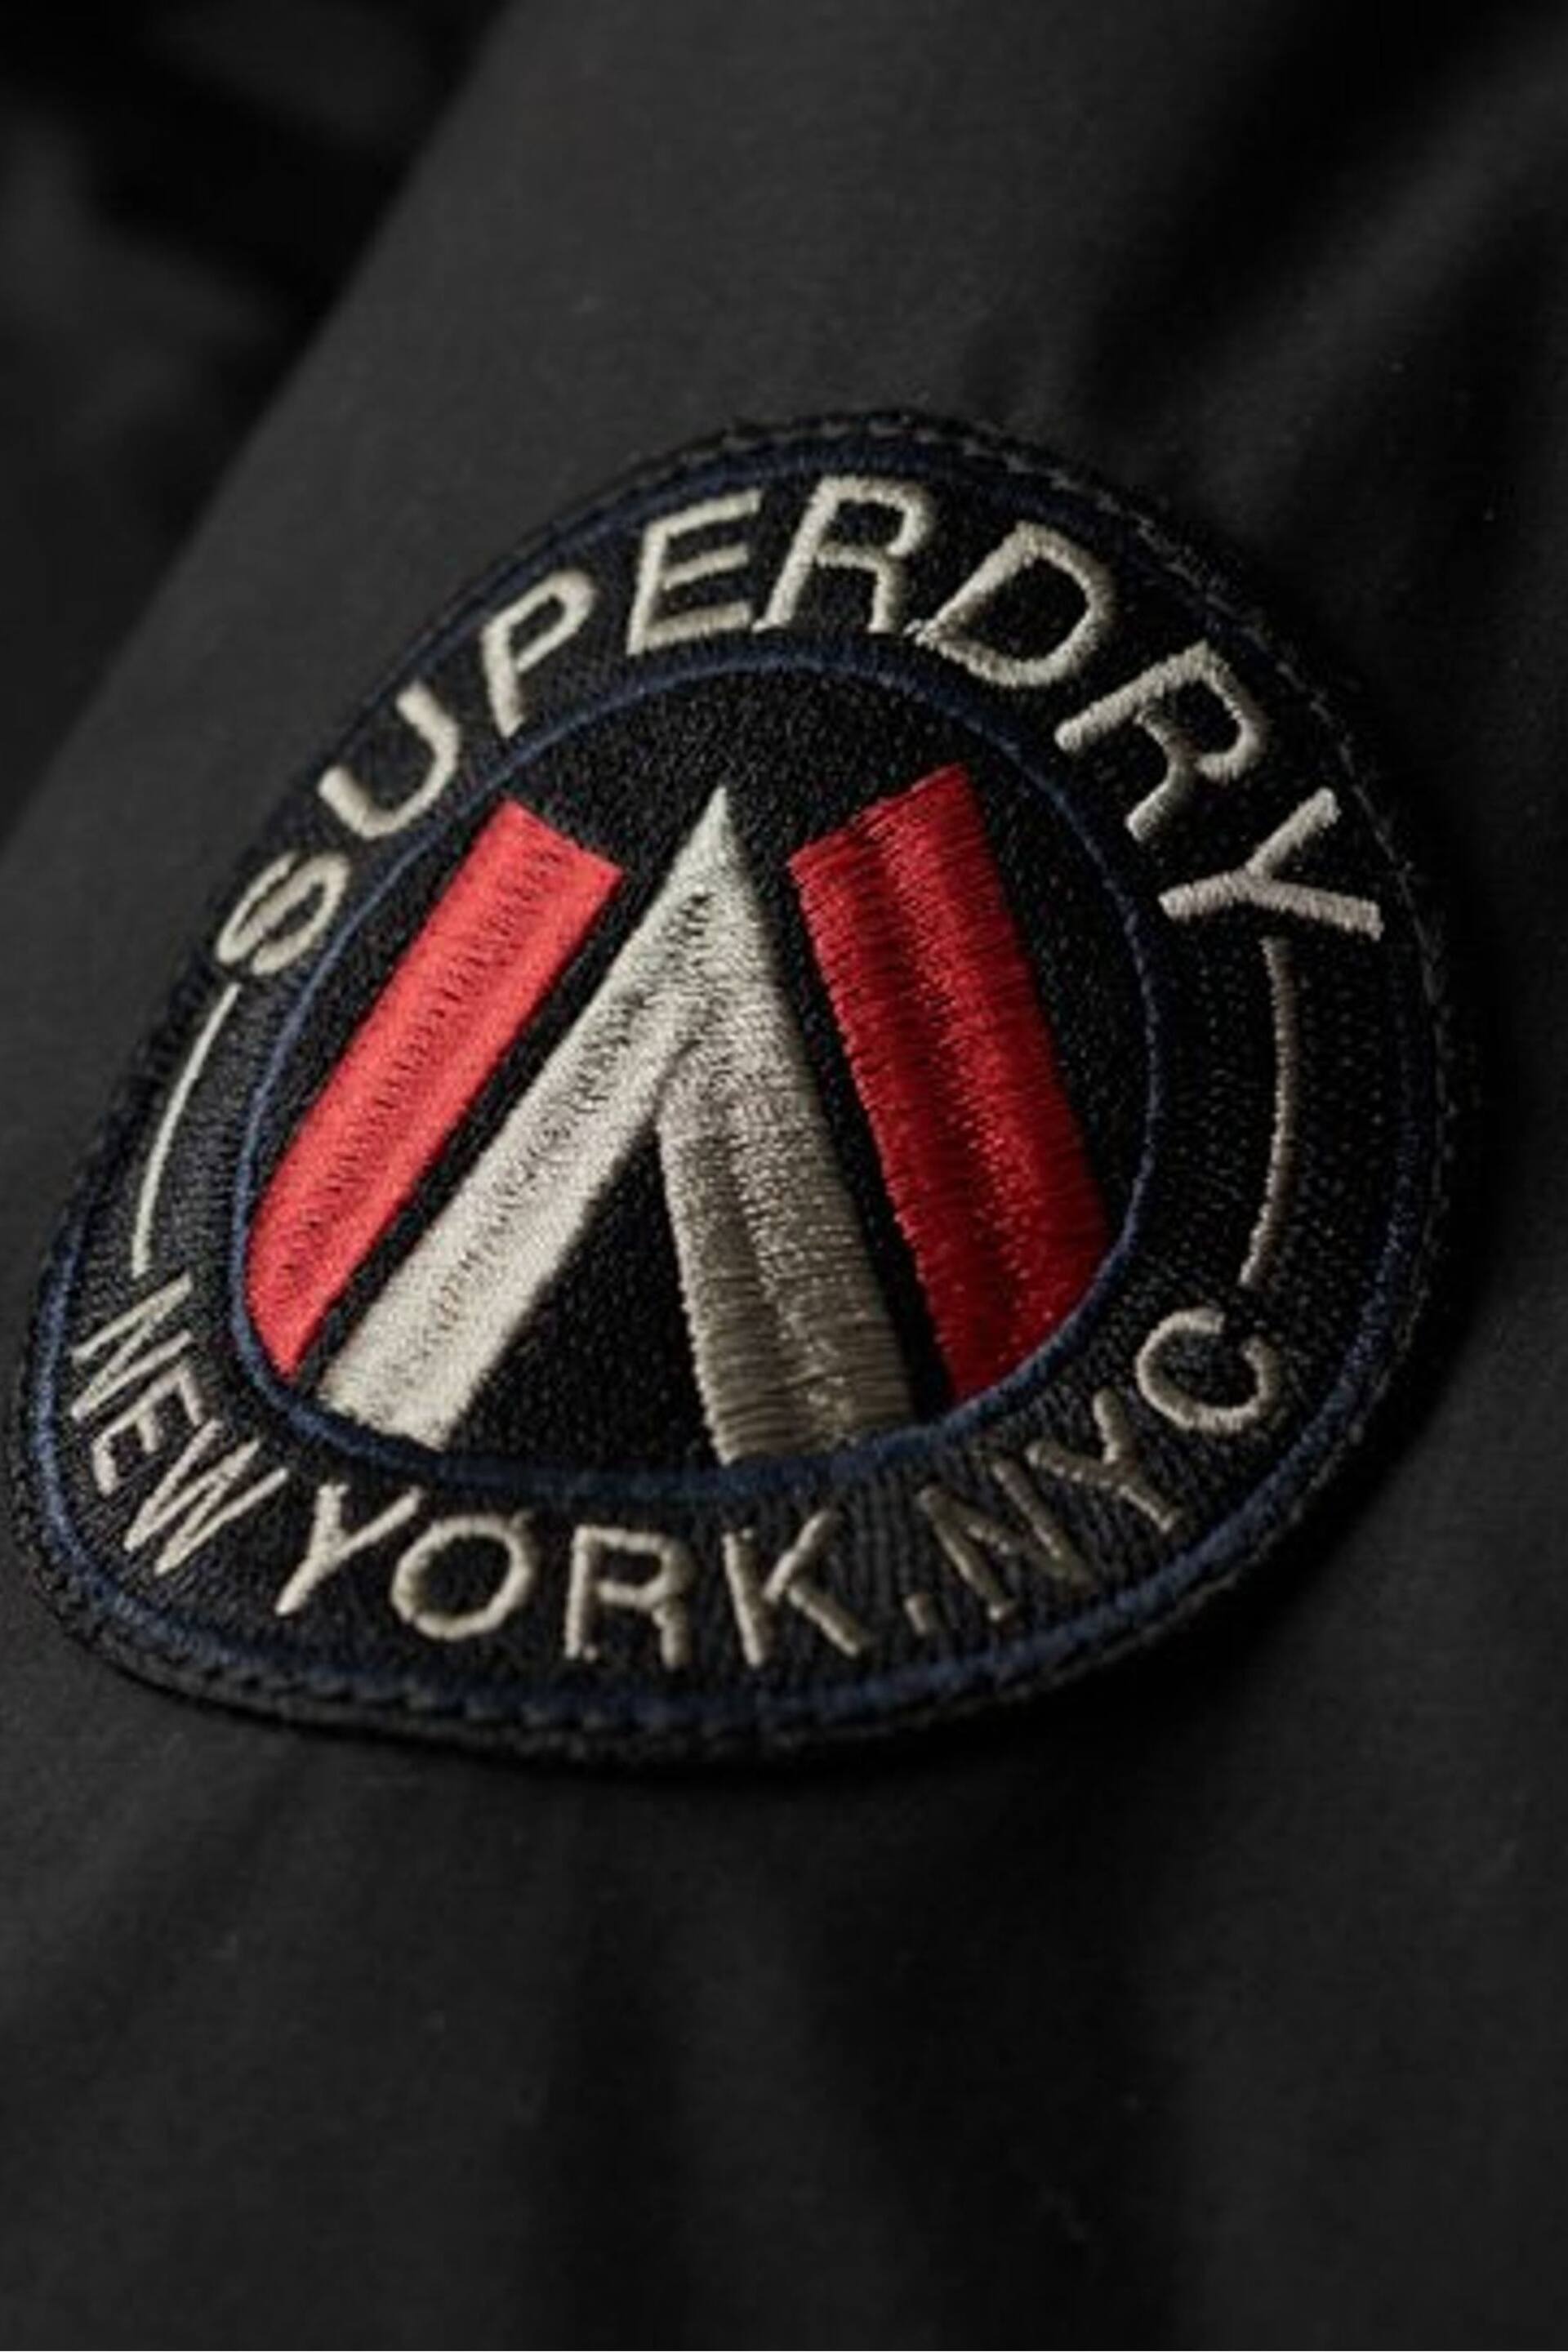 Superdry Black Chrome City Padded Parka Jacket - Image 6 of 6